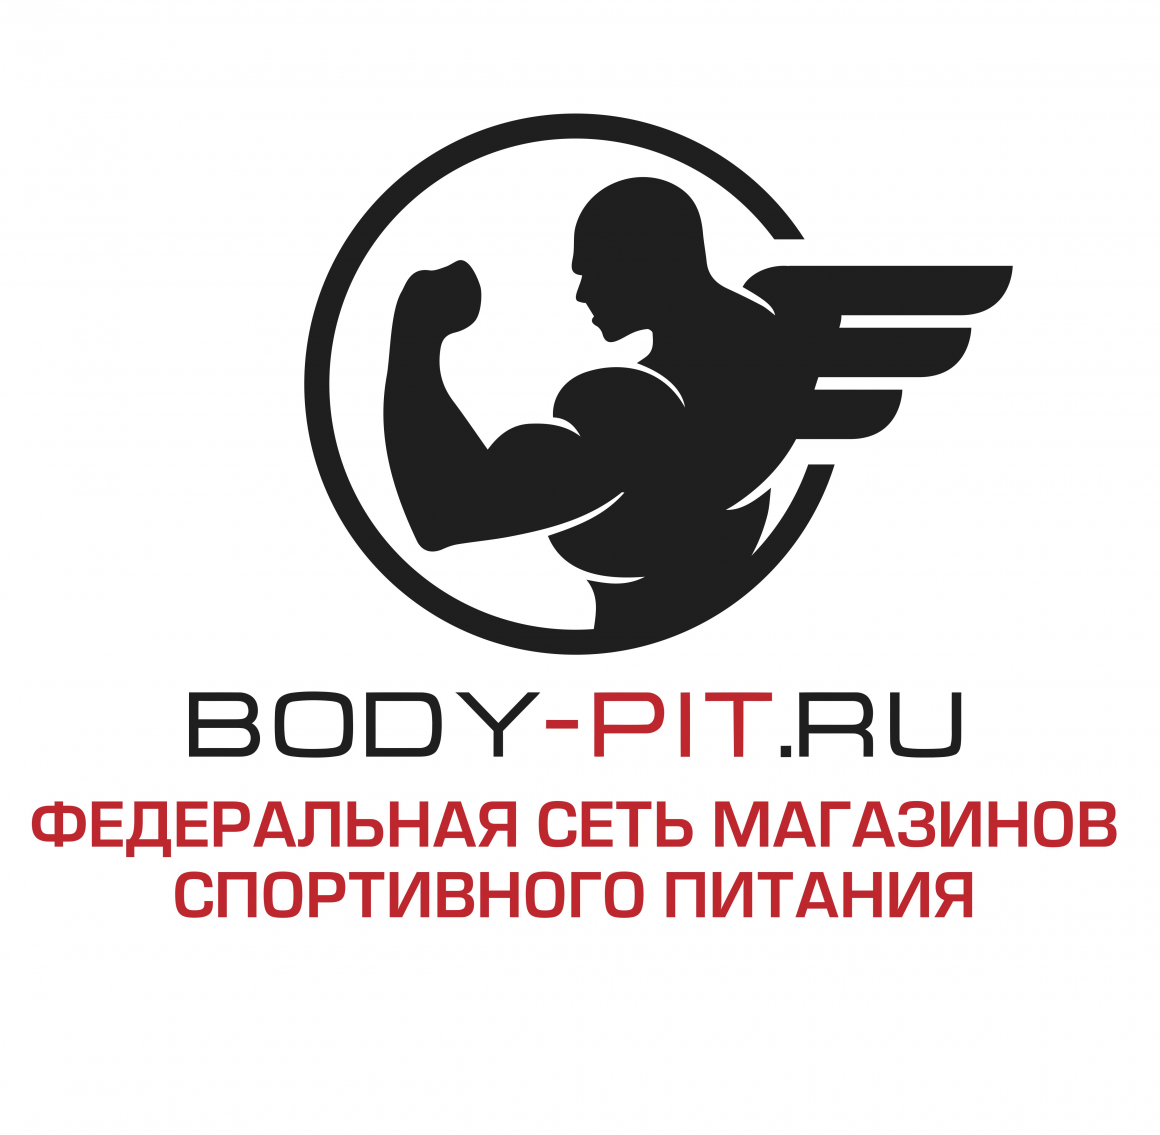 Body-pit